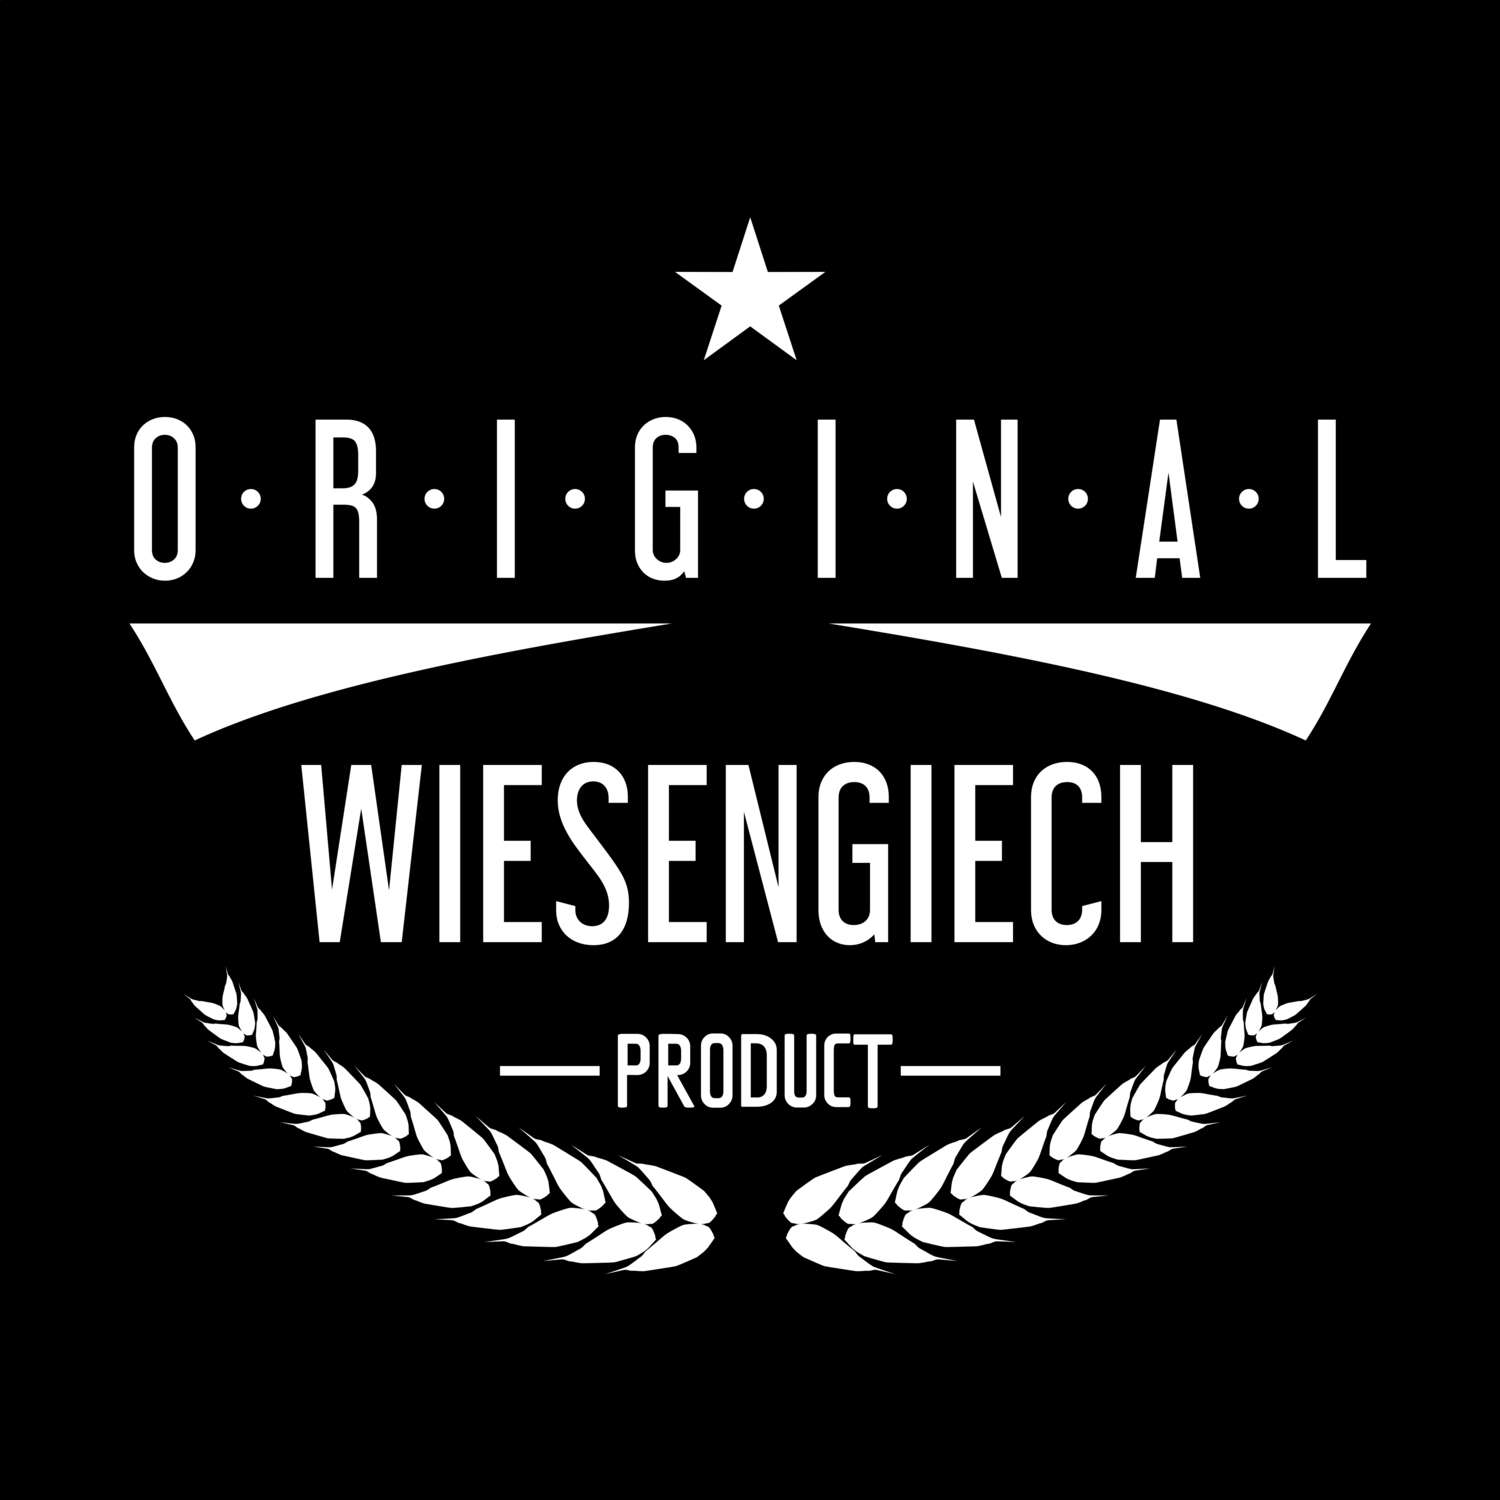 Wiesengiech T-Shirt »Original Product«